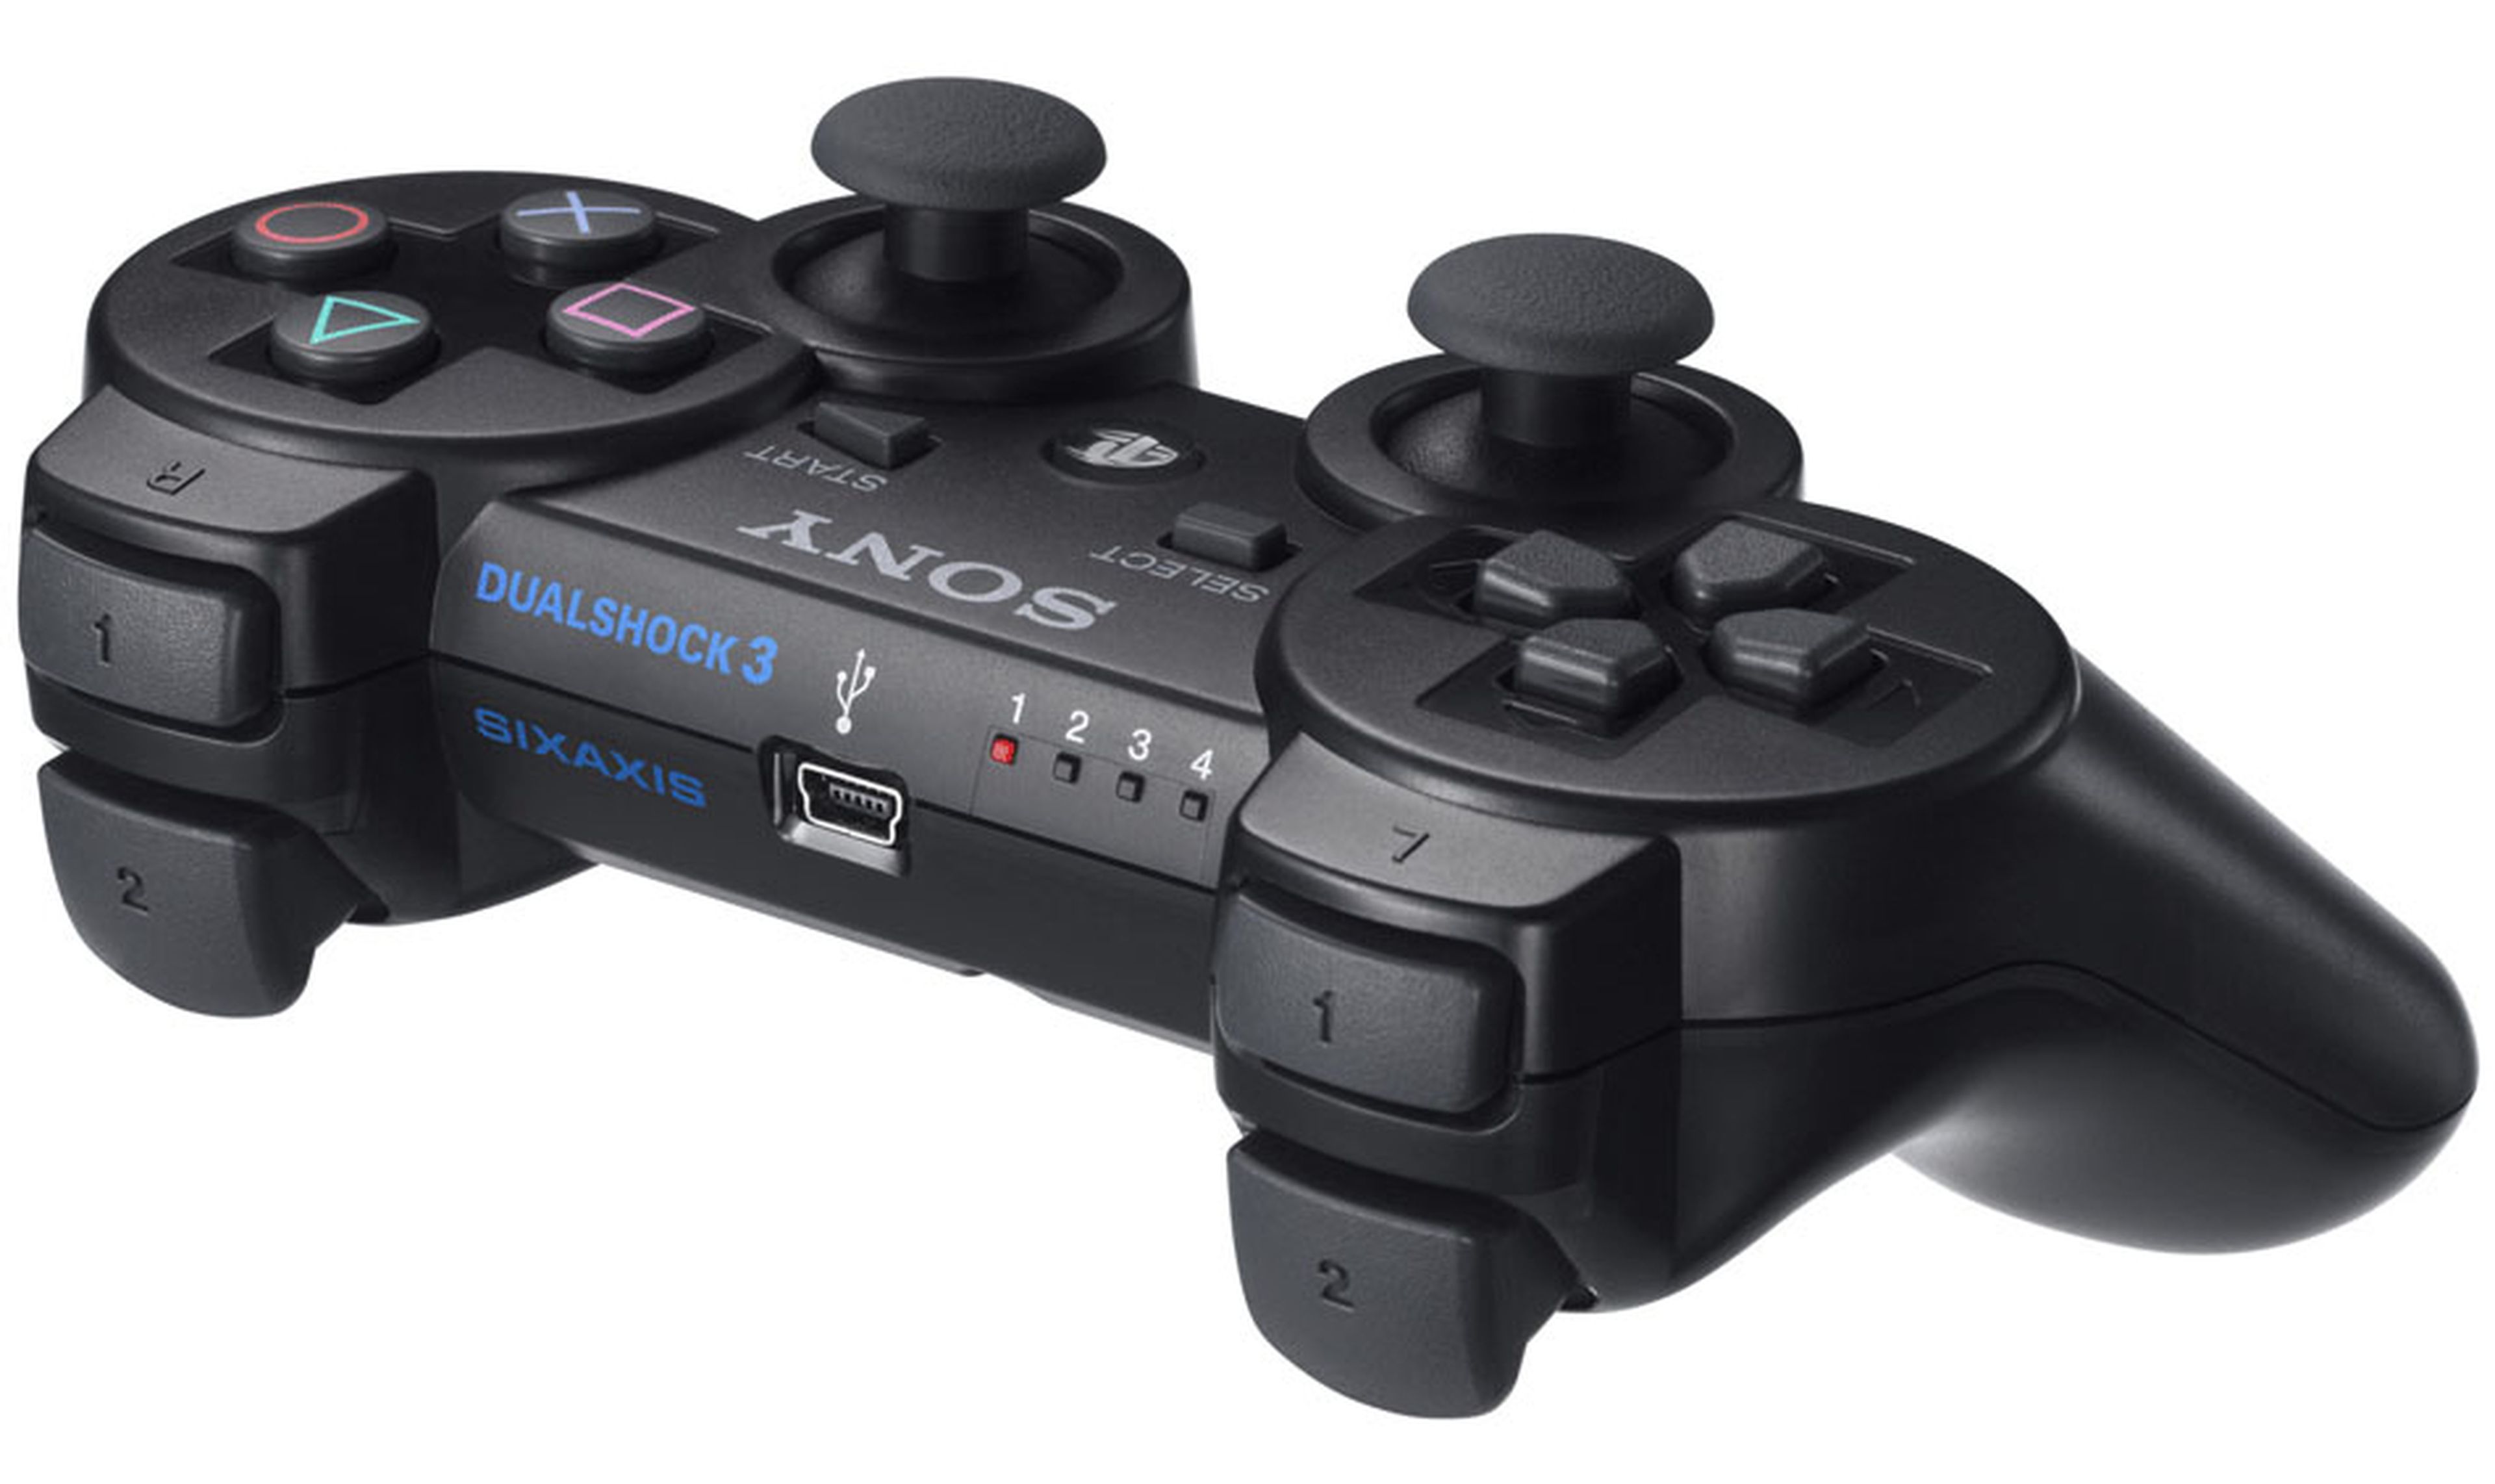 Así hemos jugado en Playstation: los mandos y controladores de la historia  de Sony